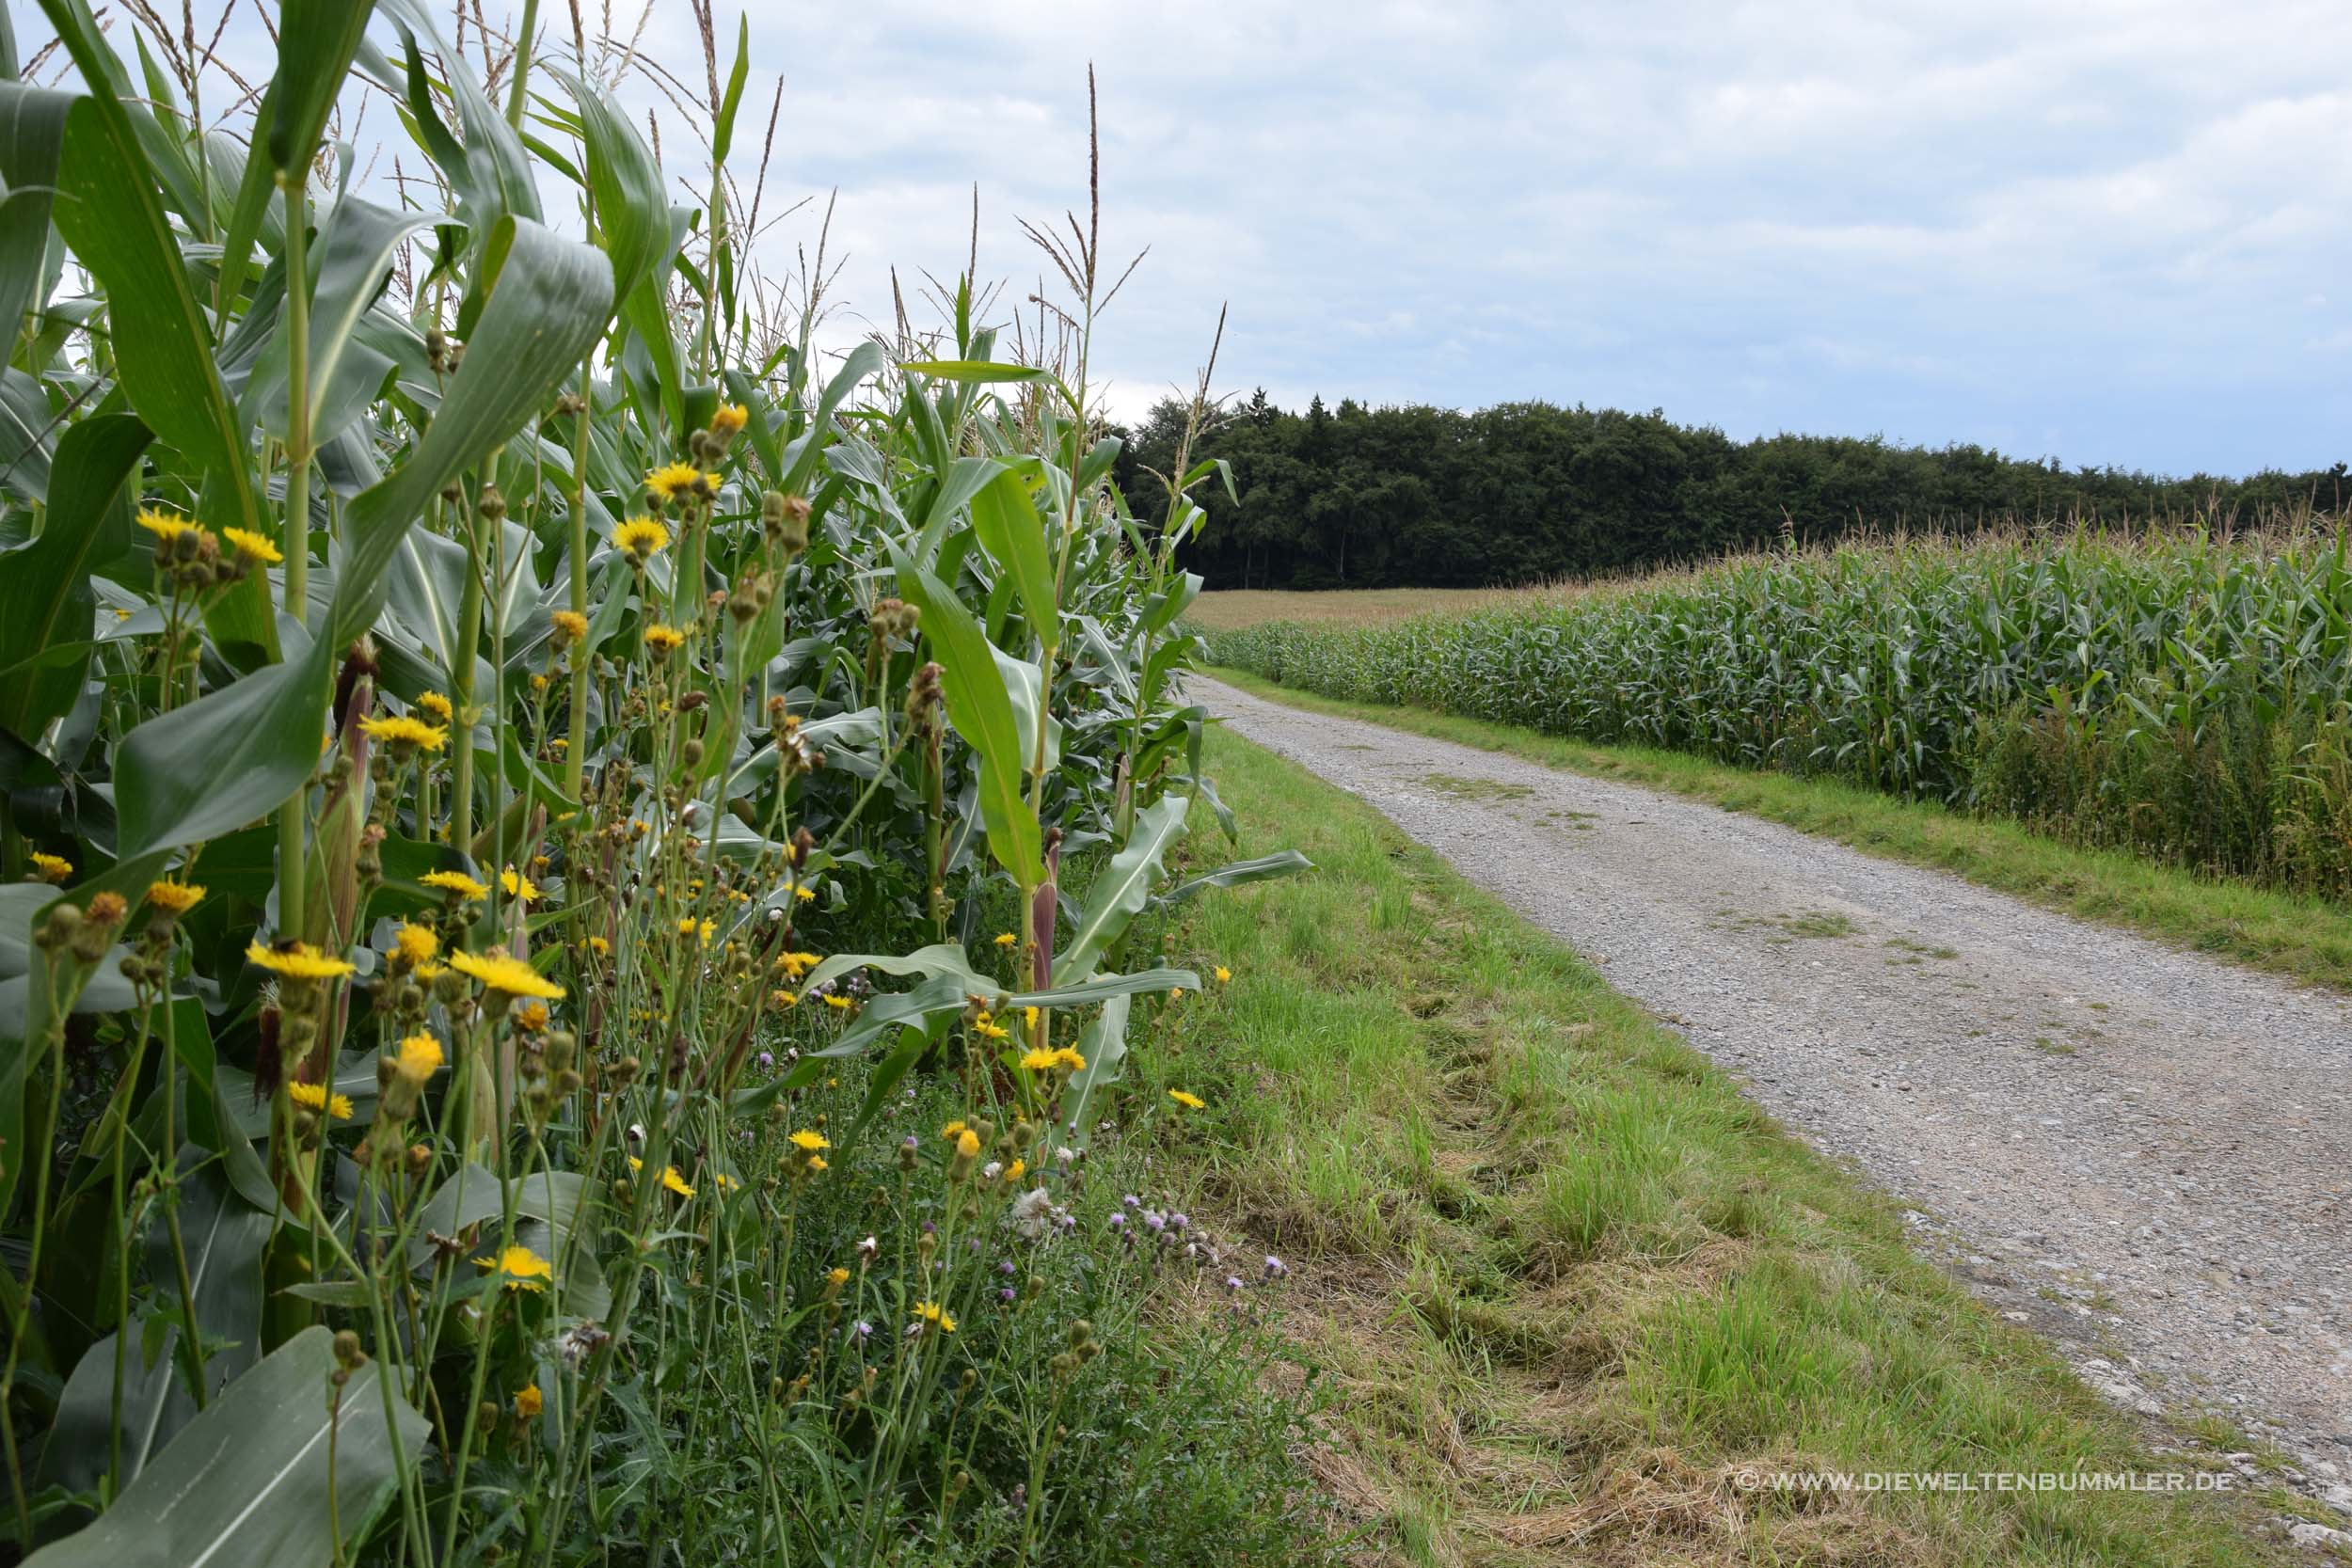 Wanderung entlang von Maisfeldern